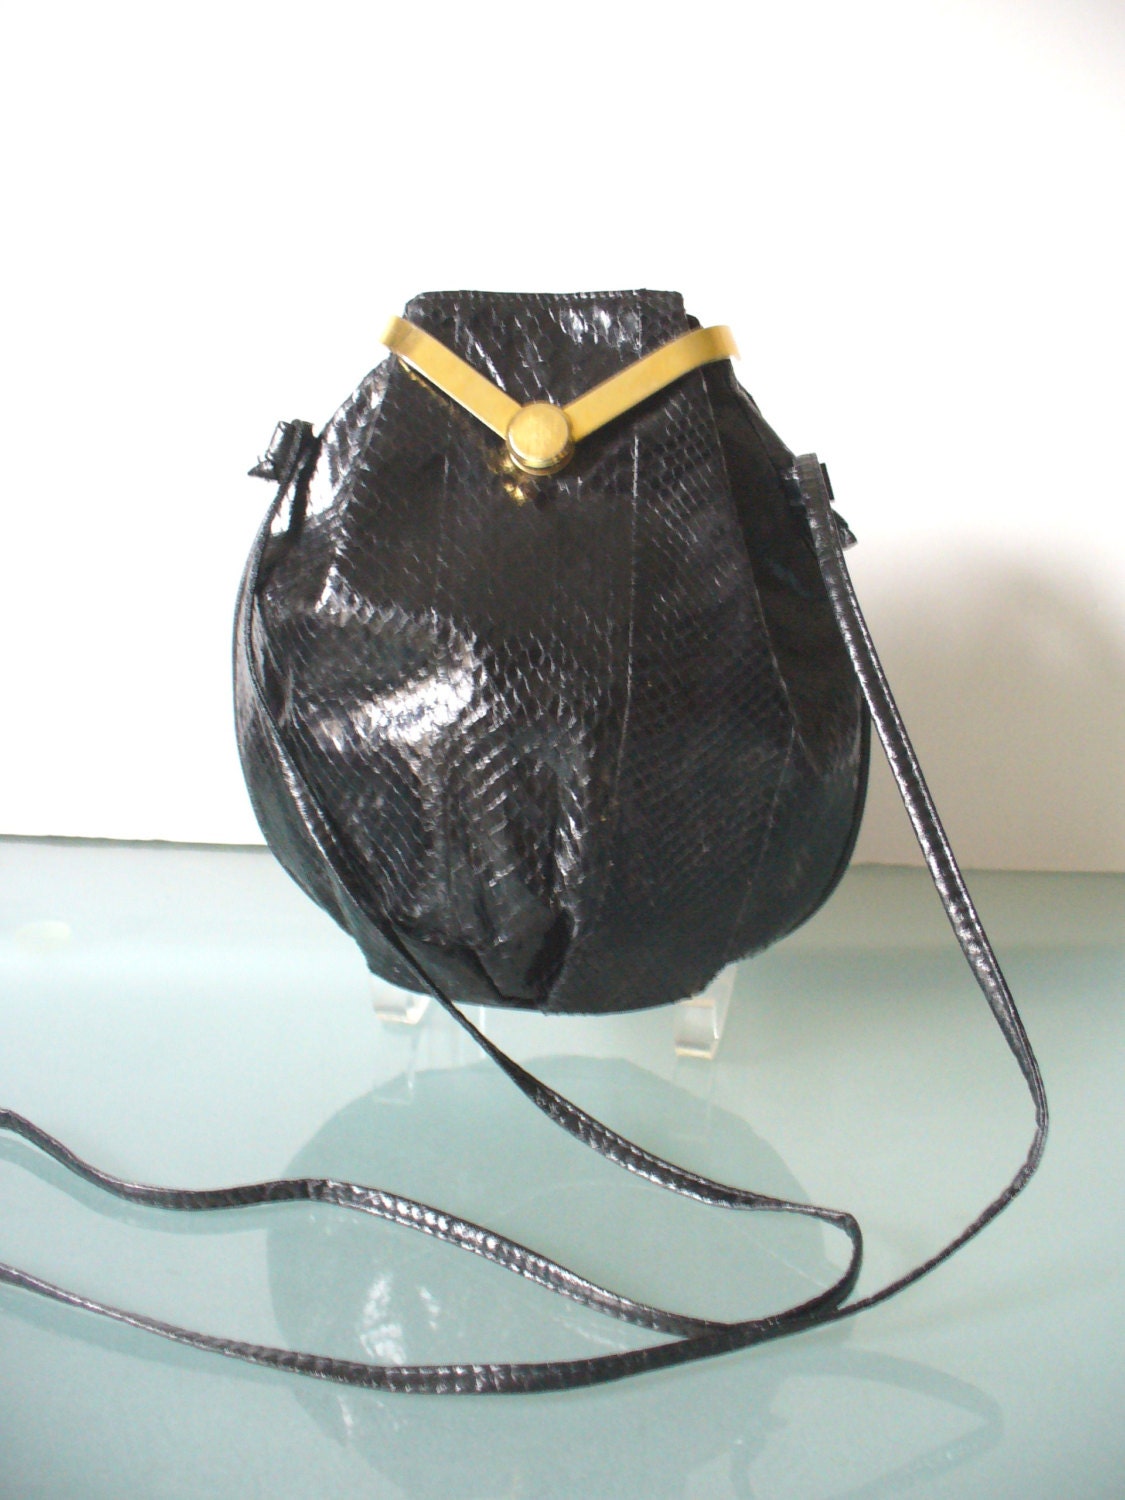 Vintage Black Snakeskin Shoulder Bag Purse by TheOldBagOnline